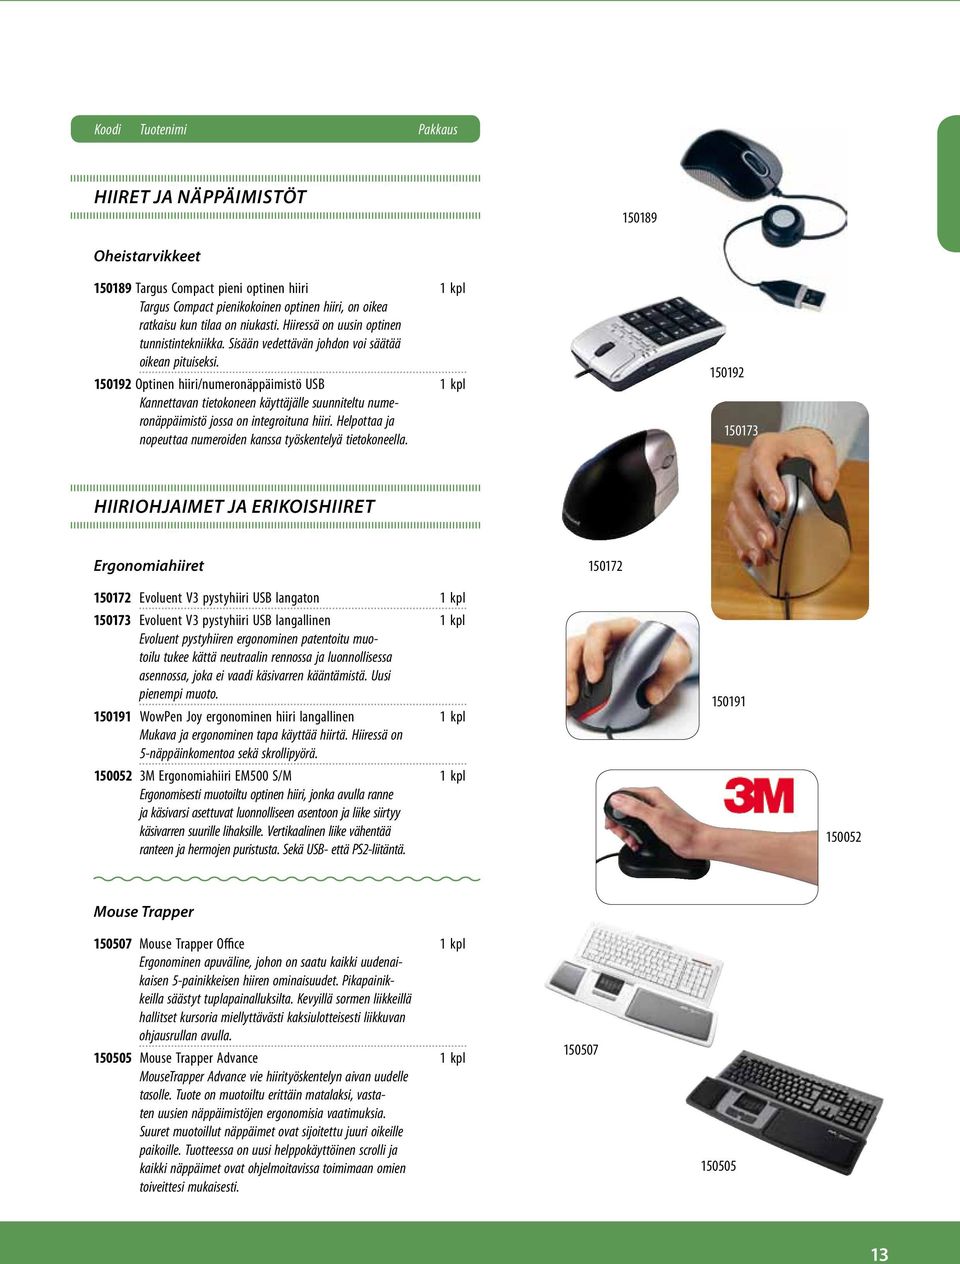 150192 Optinen hiiri/numeronäppäimistö USB 1 kpl Kannettavan tietokoneen käyttäjälle suunniteltu numeronäppäimistö jossa on integroituna hiiri.